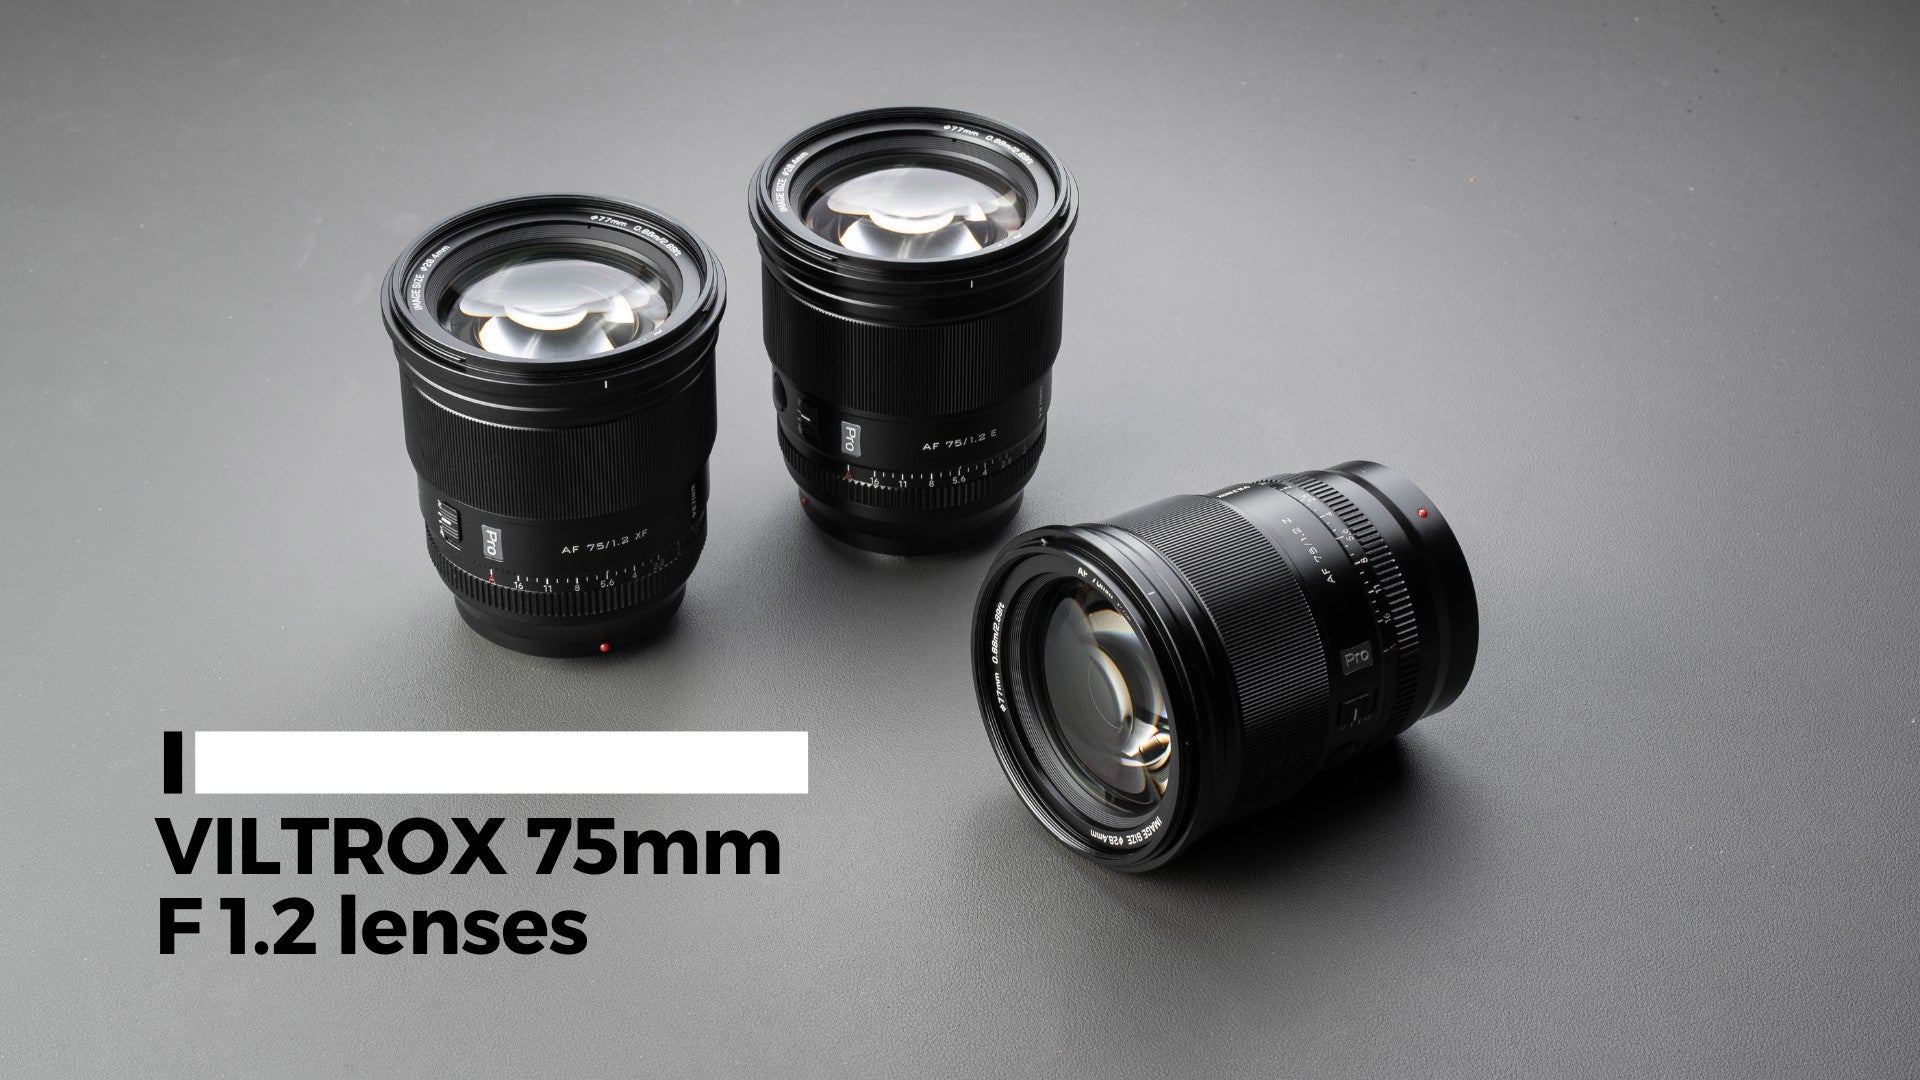 Viltrox AF 75mm F1.2 Lens Guide: A Fast and Affordable Portrait Lens